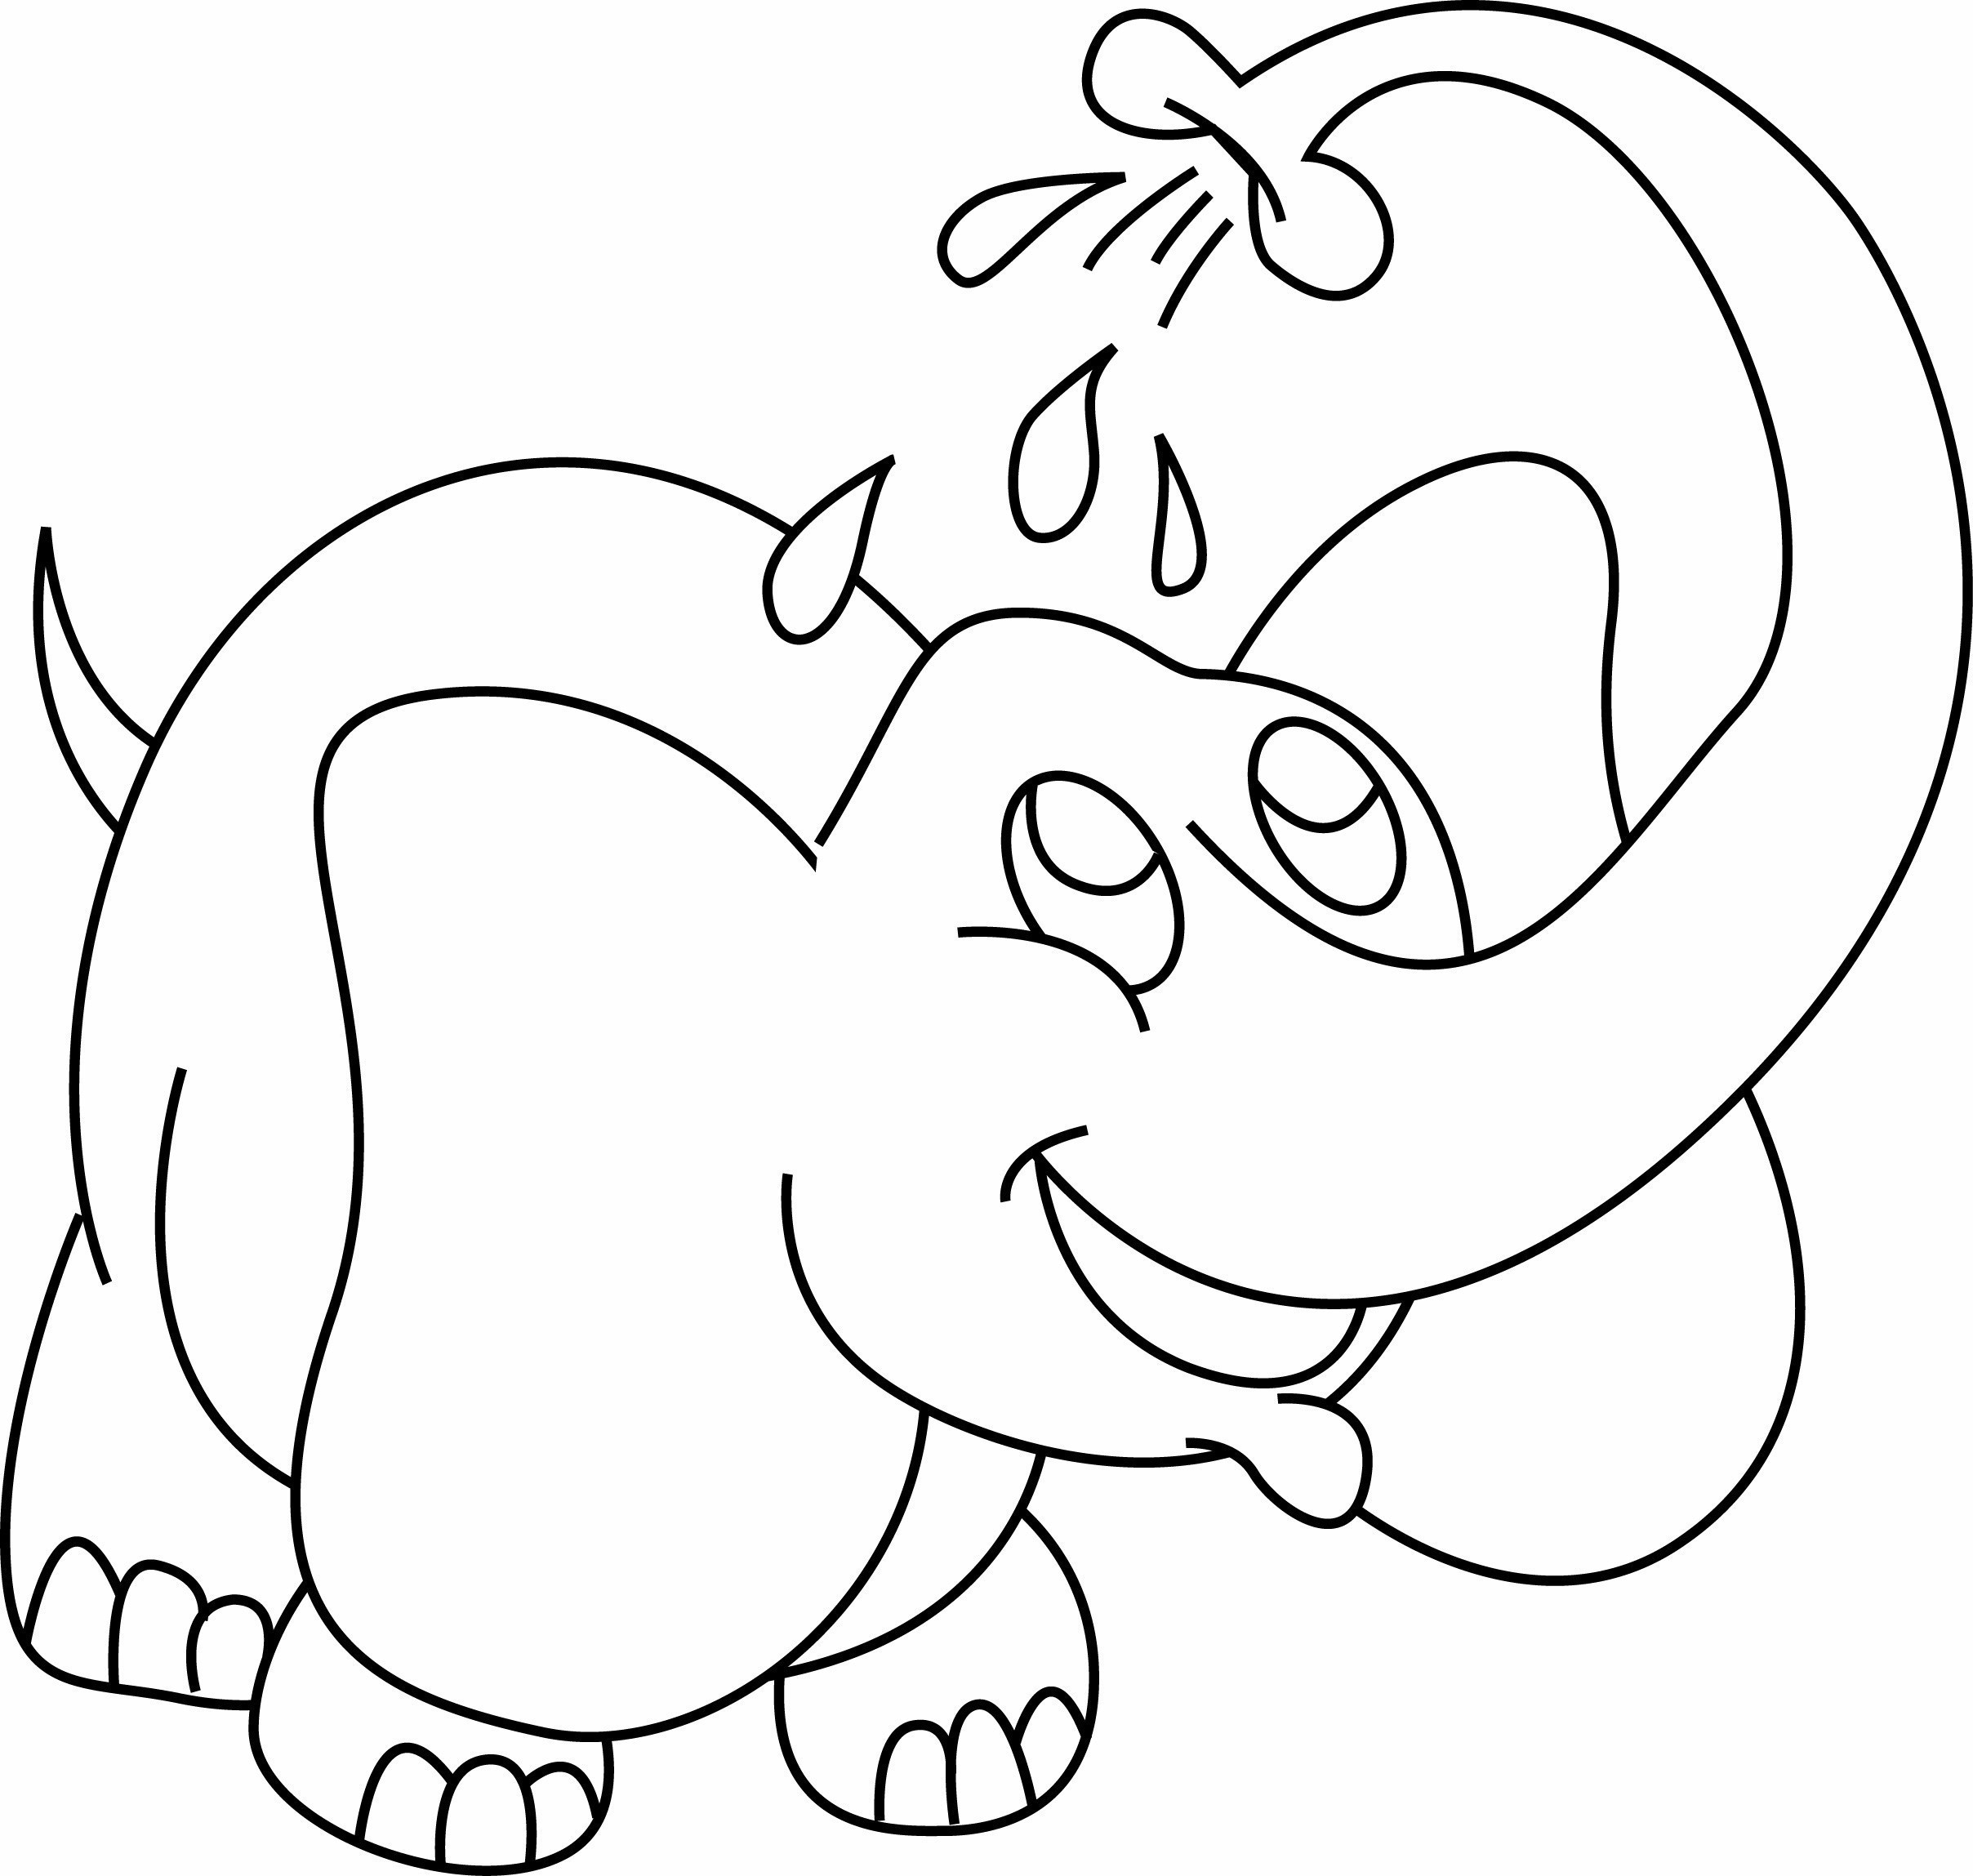 Coloriage - Animaux : Eléphant 07 - 10 Doigts destiné Image Éléphant À Colorier